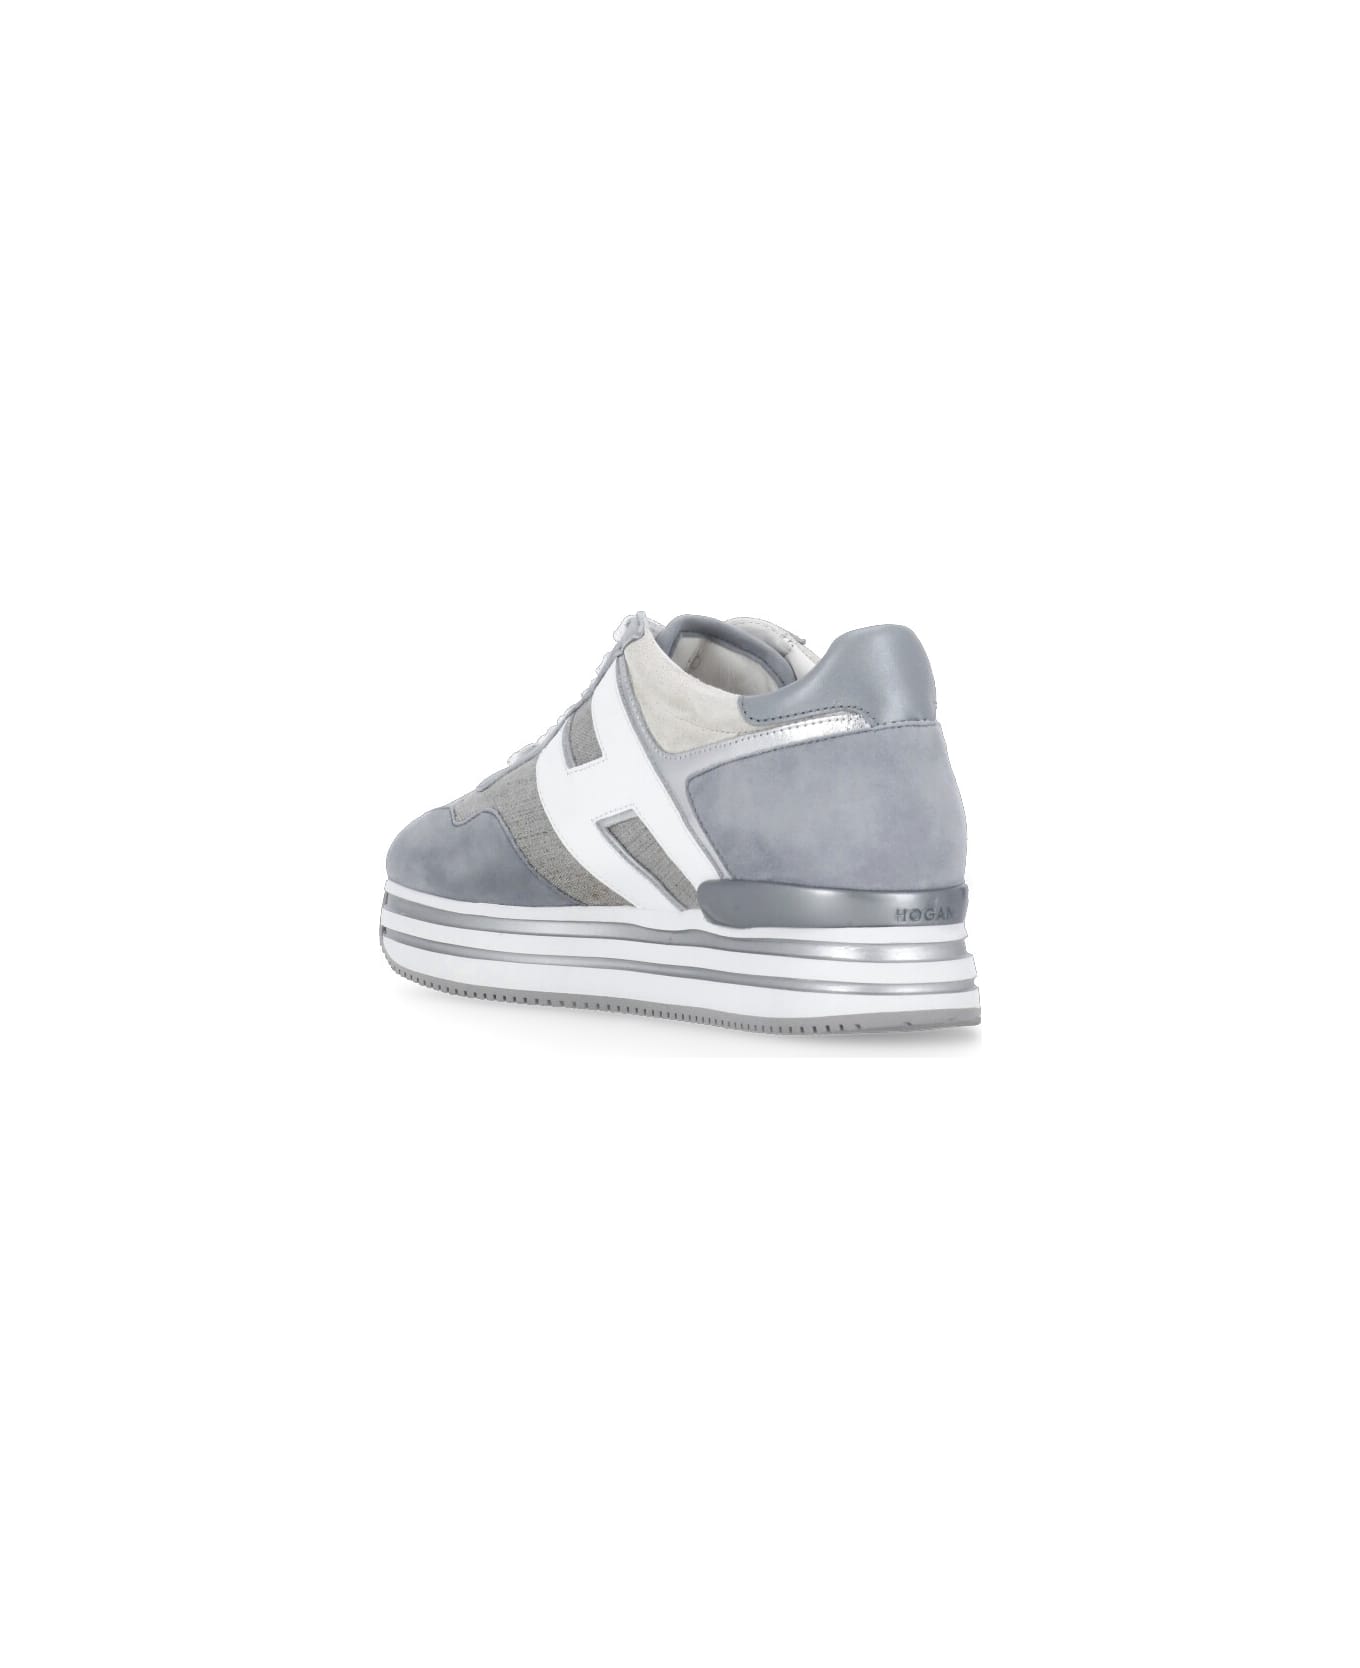 Hogan H483 Sneakers - Grey